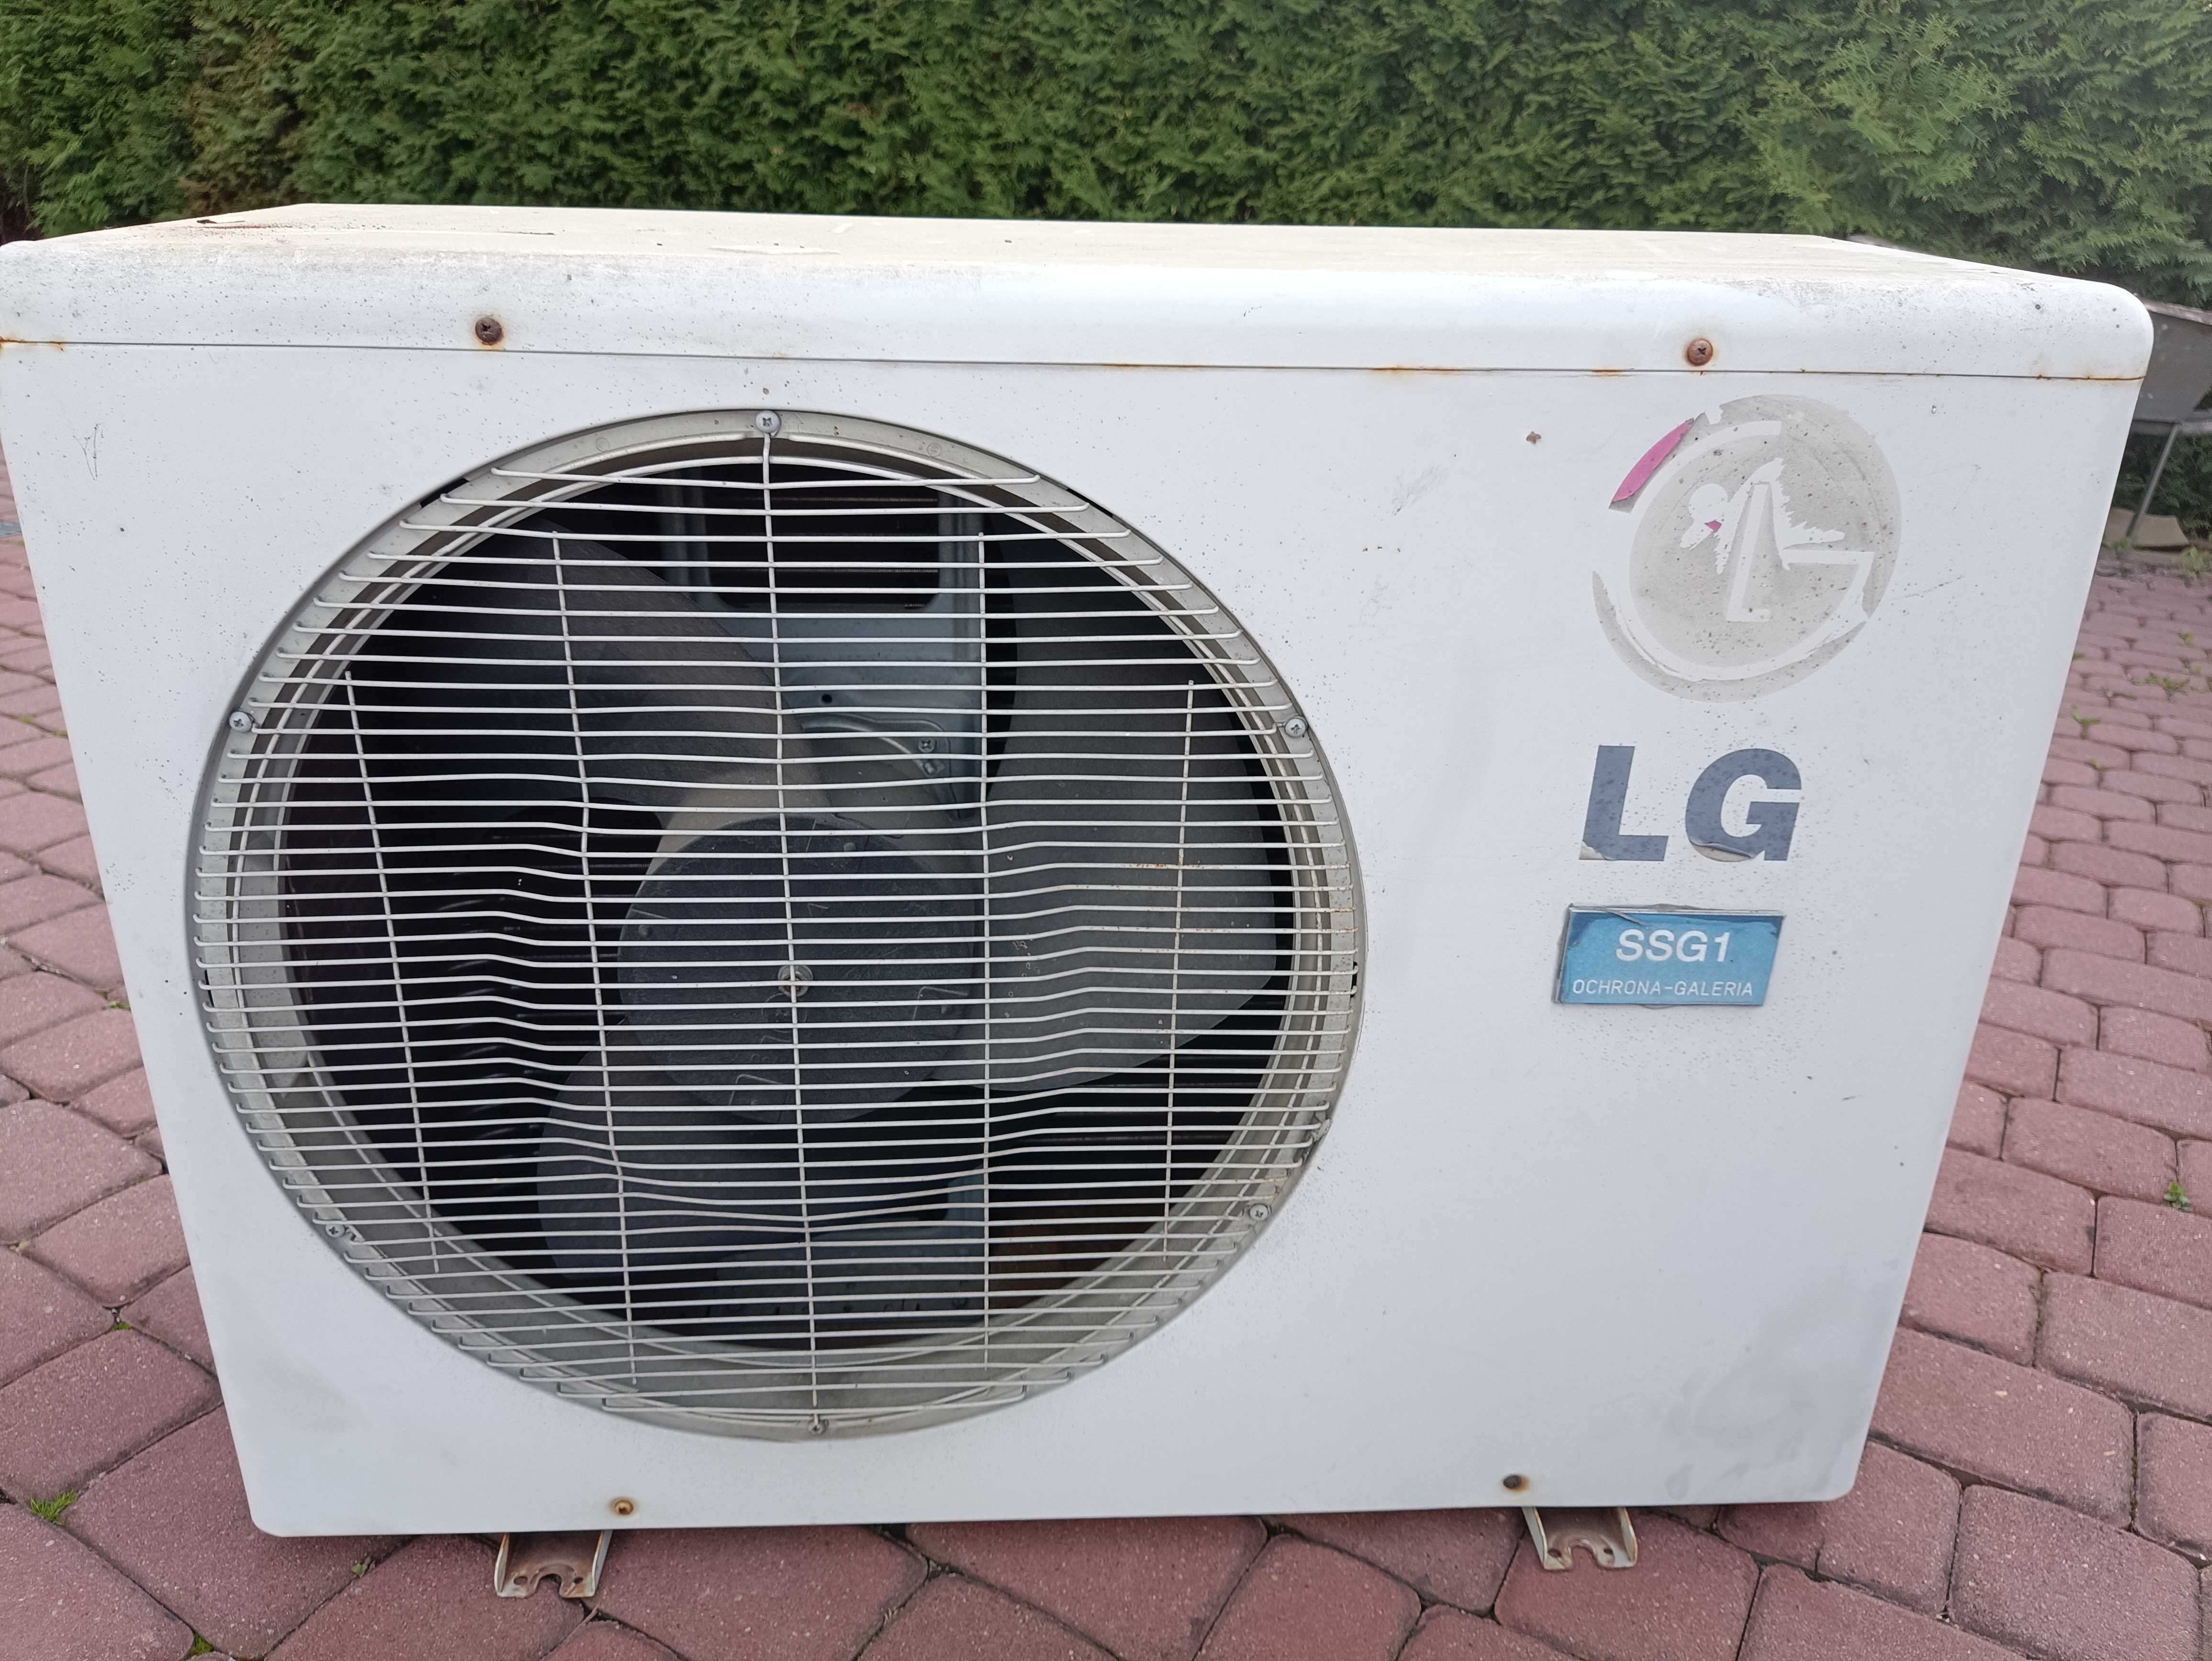 Klimatyzator, Zestaw klimatyzacja LG K18AH, używany i sprawnym